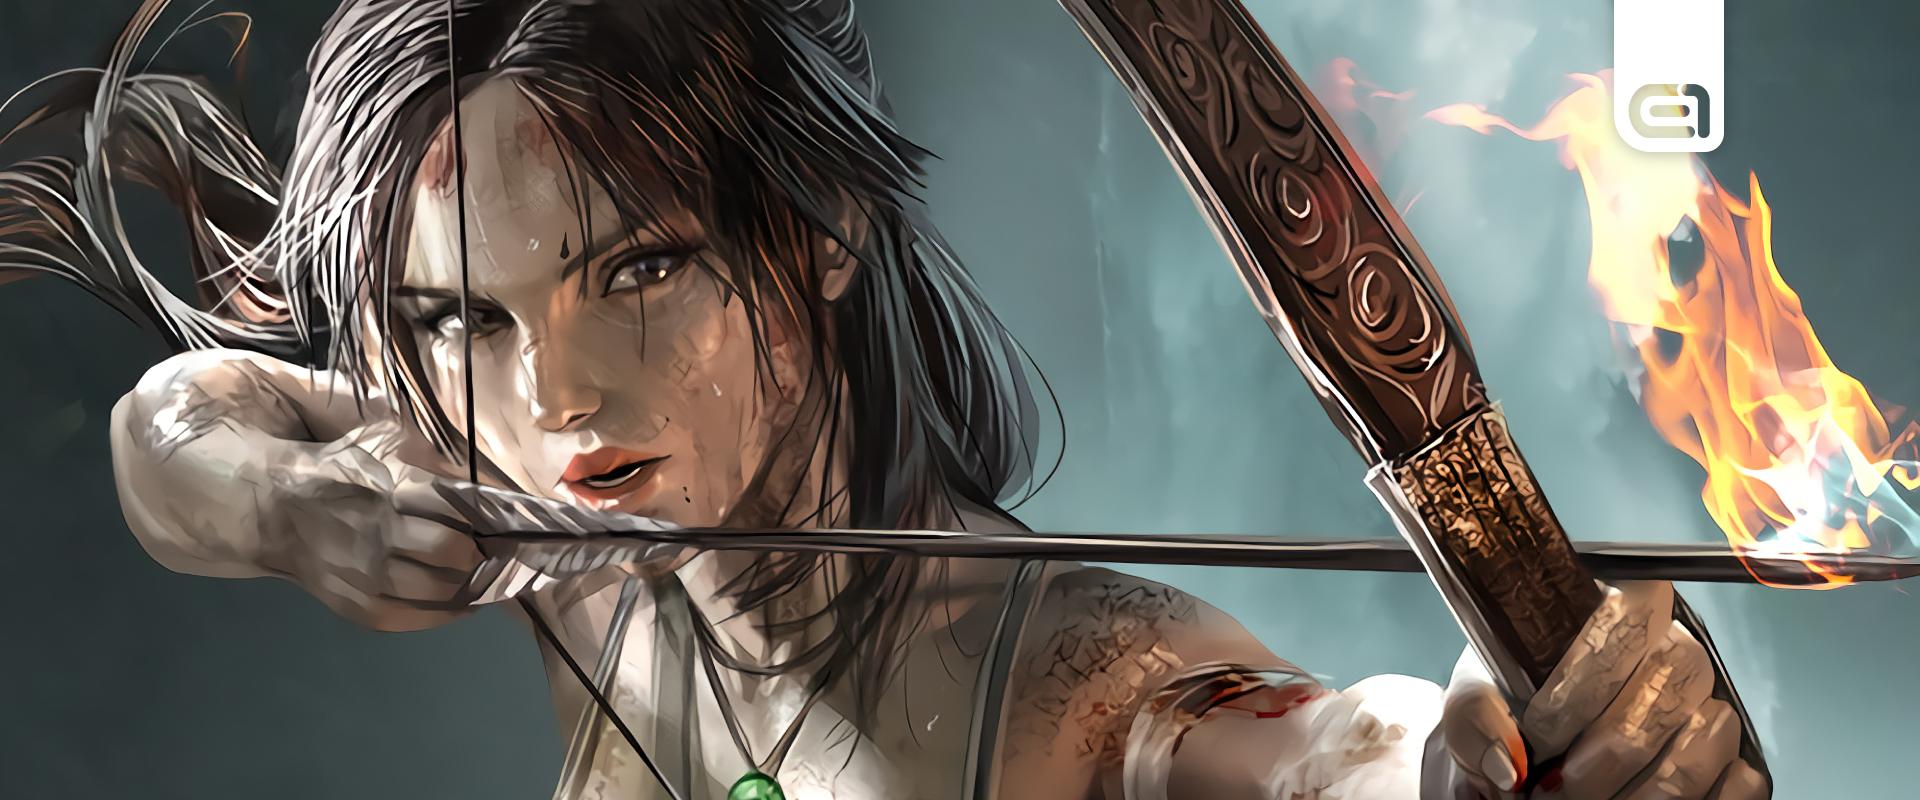 2 milliárdot bukott a stúdió, de az új Tomb Raider nincs veszélyben